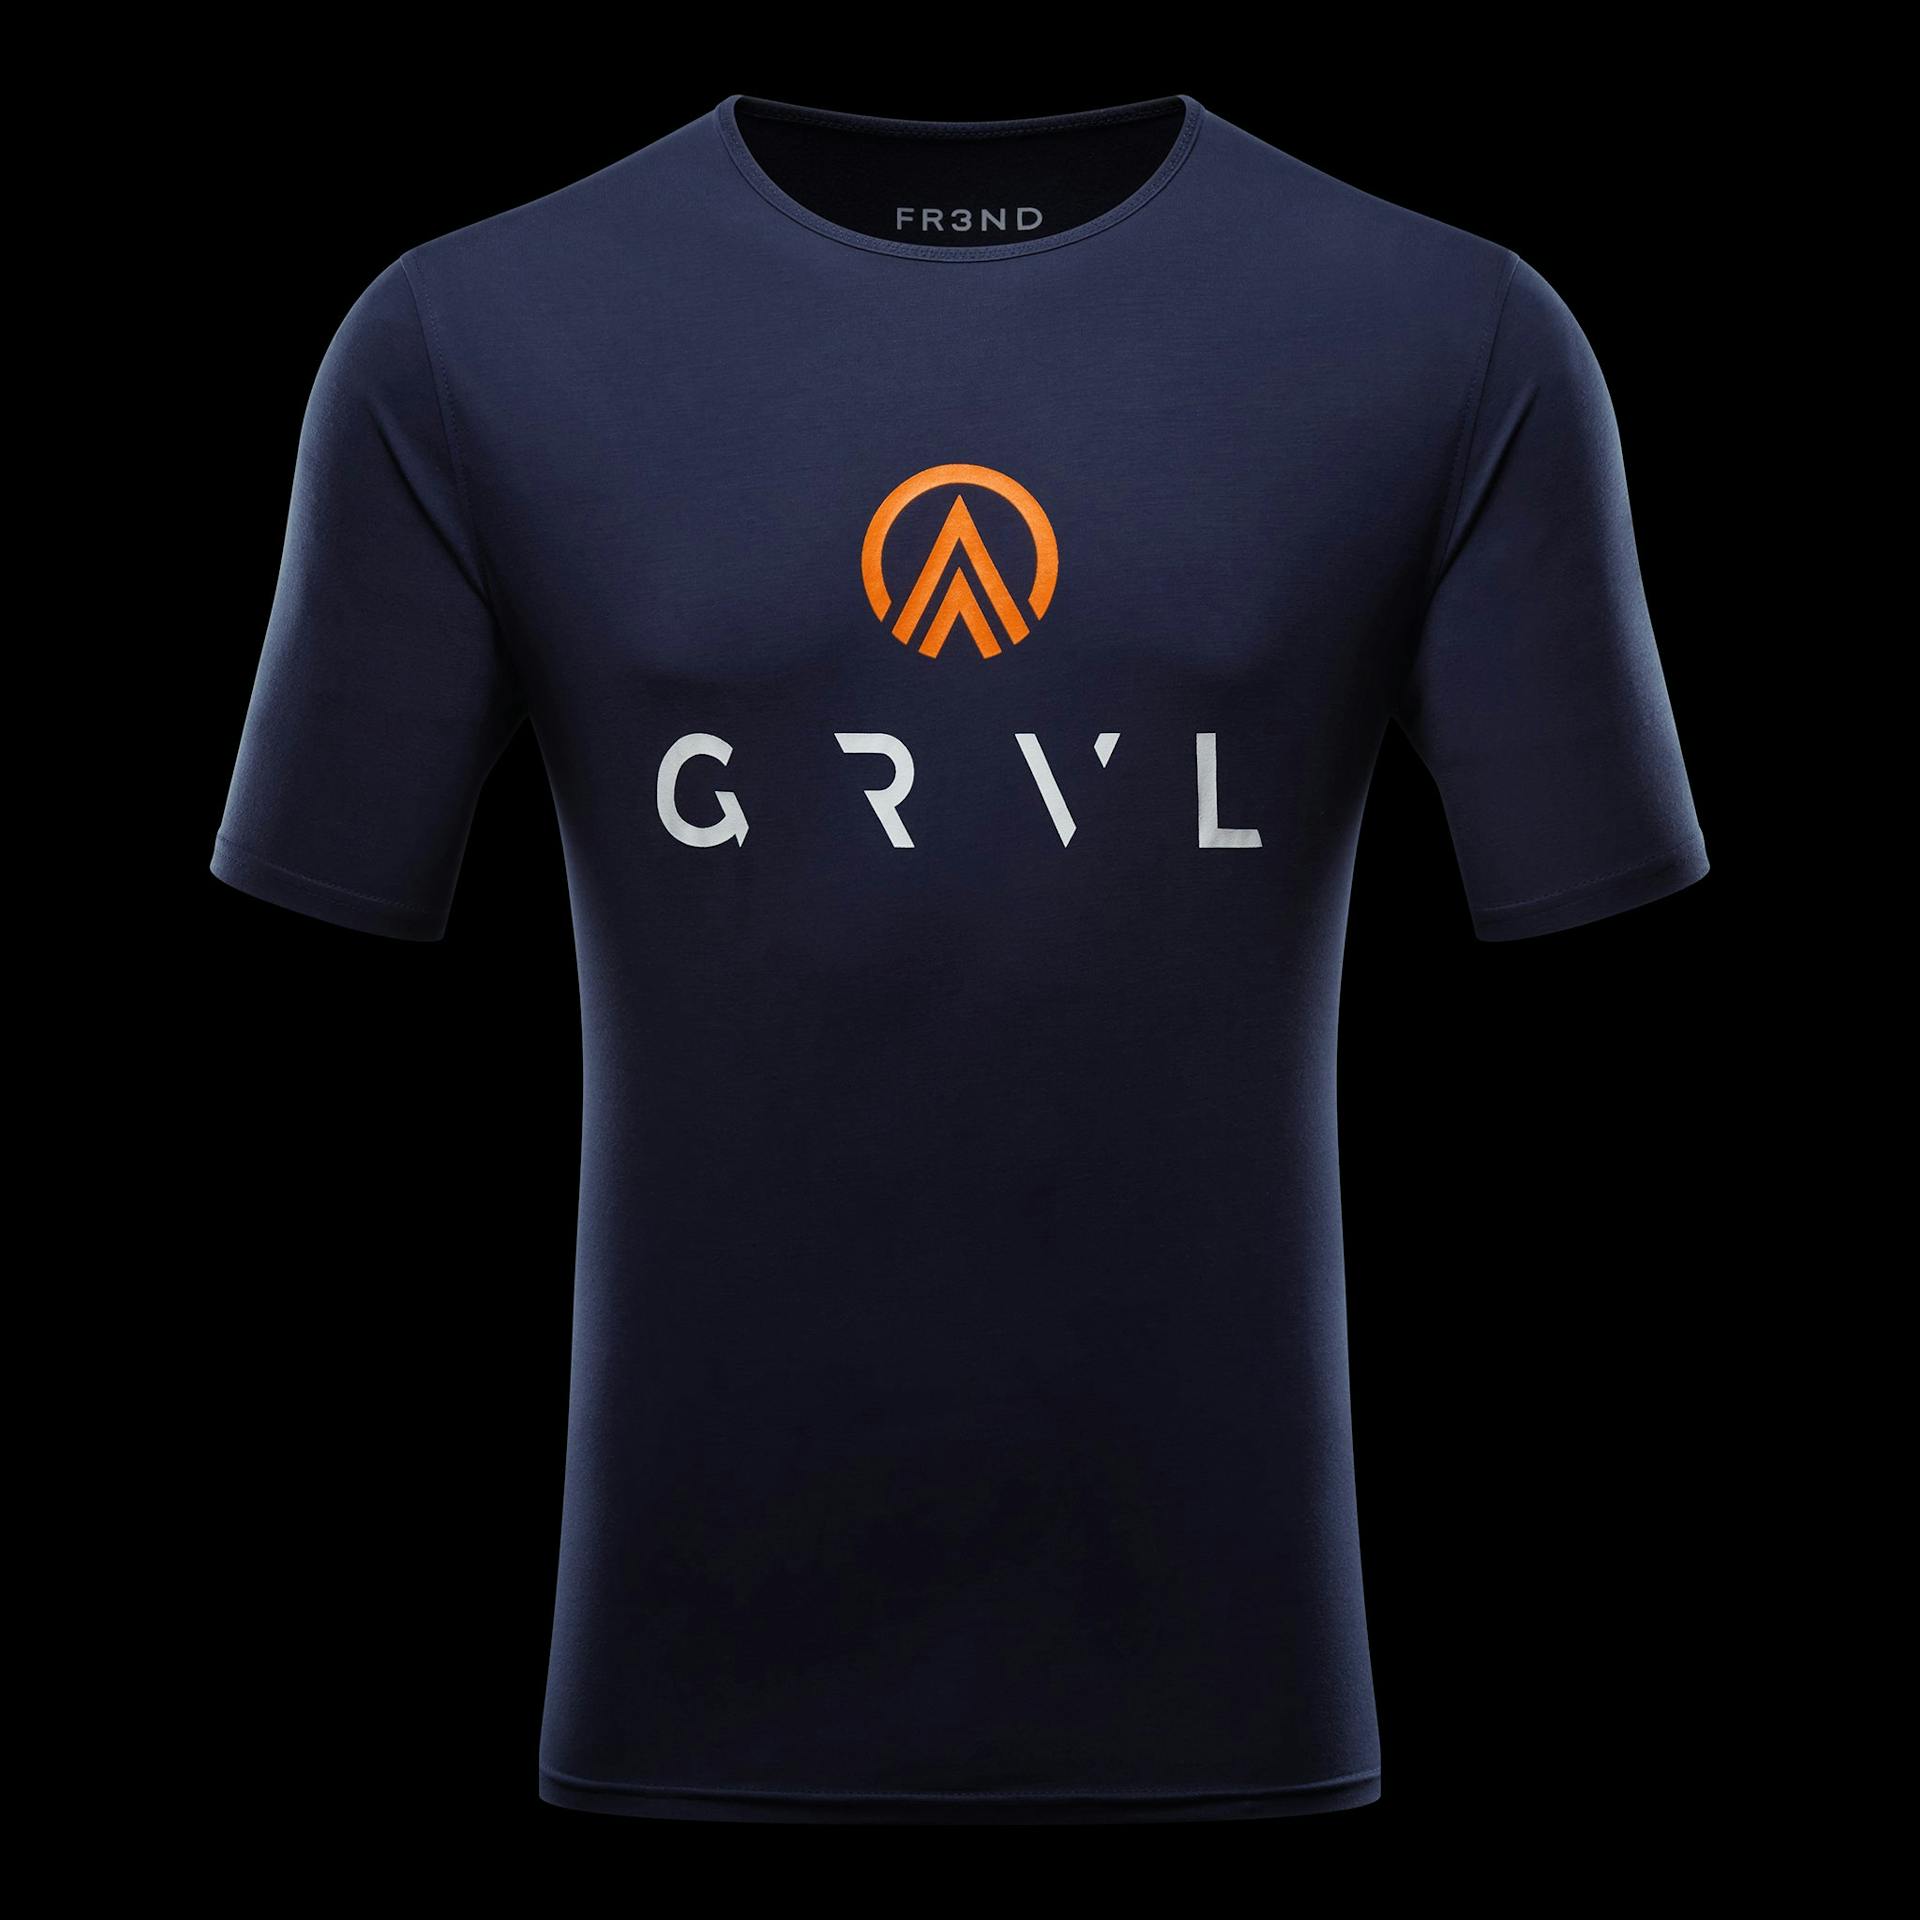 T-Shirt - Navy - GRVL  X  FR3ND